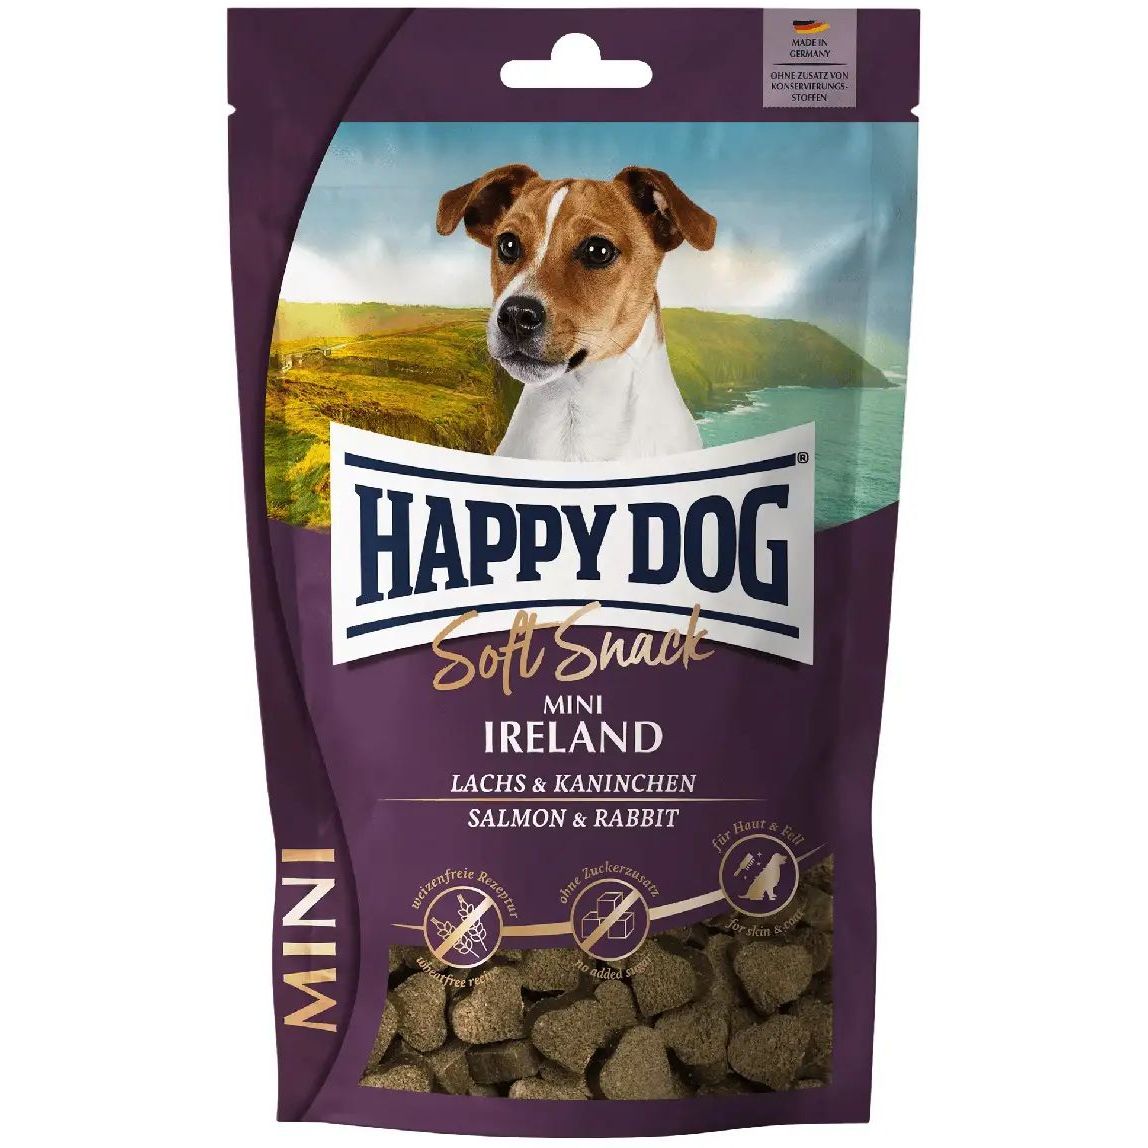 Ласощі для собак Happy Dog Soft Snack Mini Ireland м'які зі смаком лосося та кролика, 100 г - фото 1